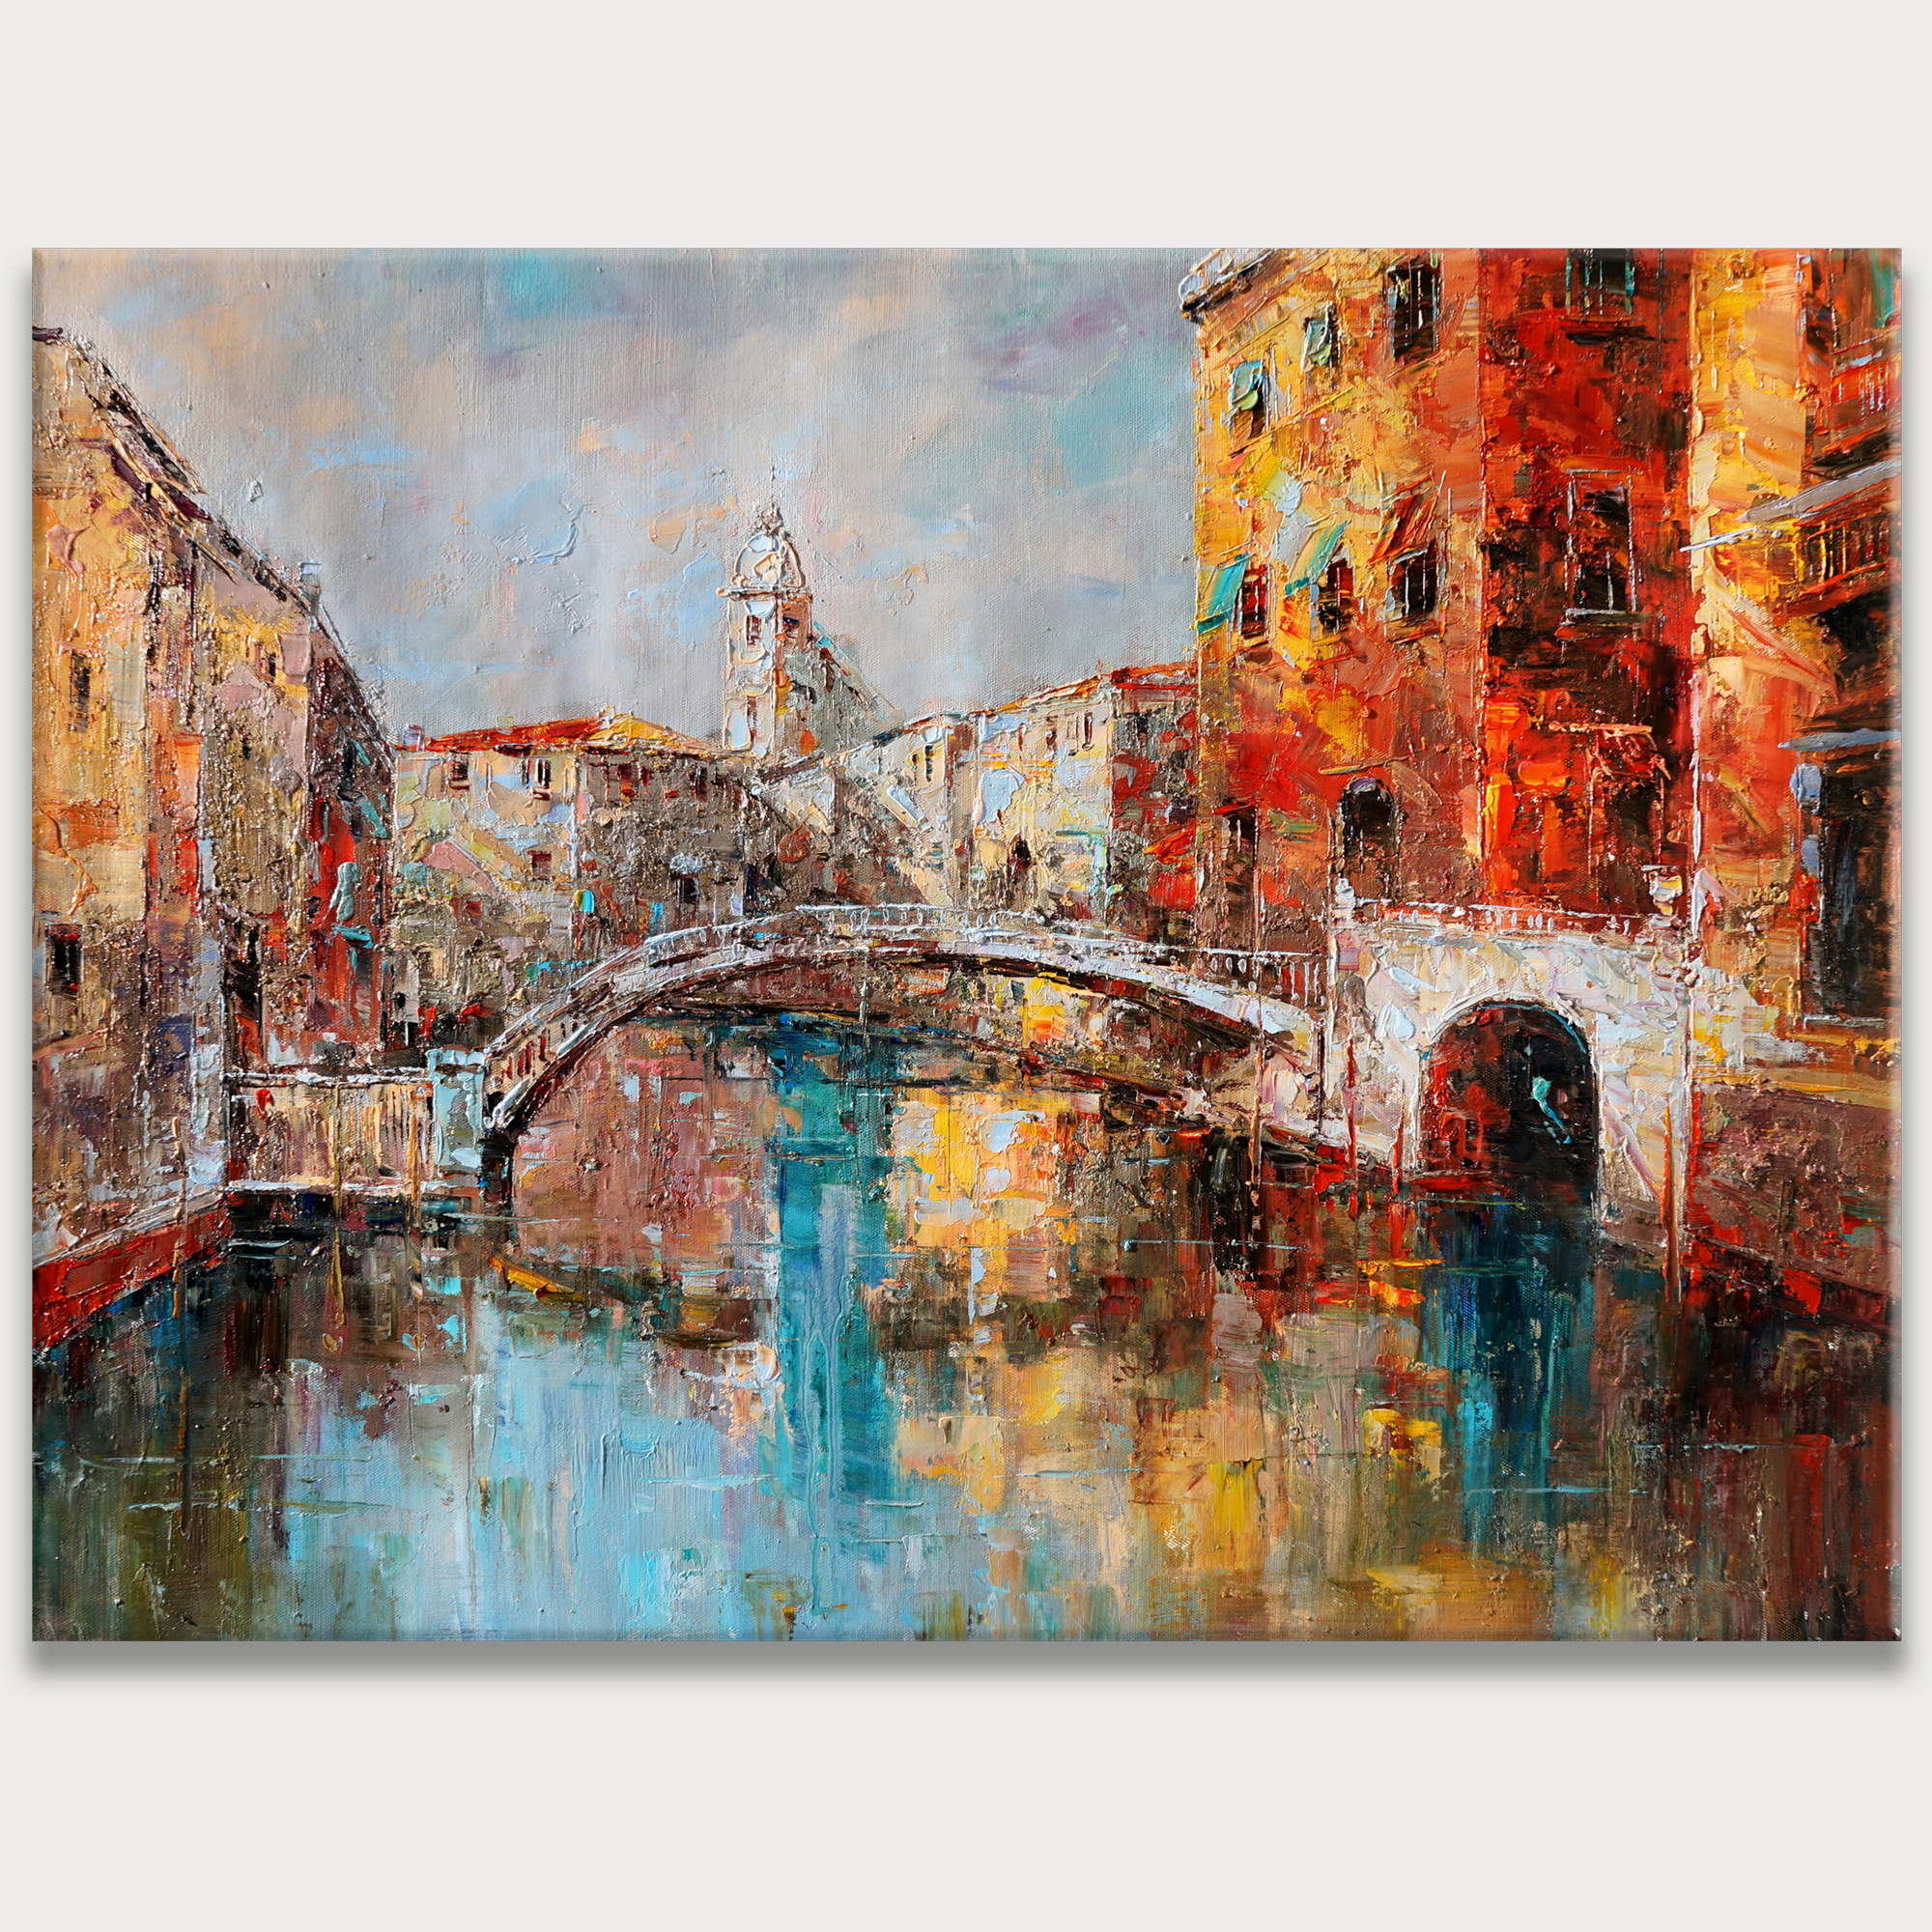 Vue d'un canal à Venise peinte à la main 75x100cm